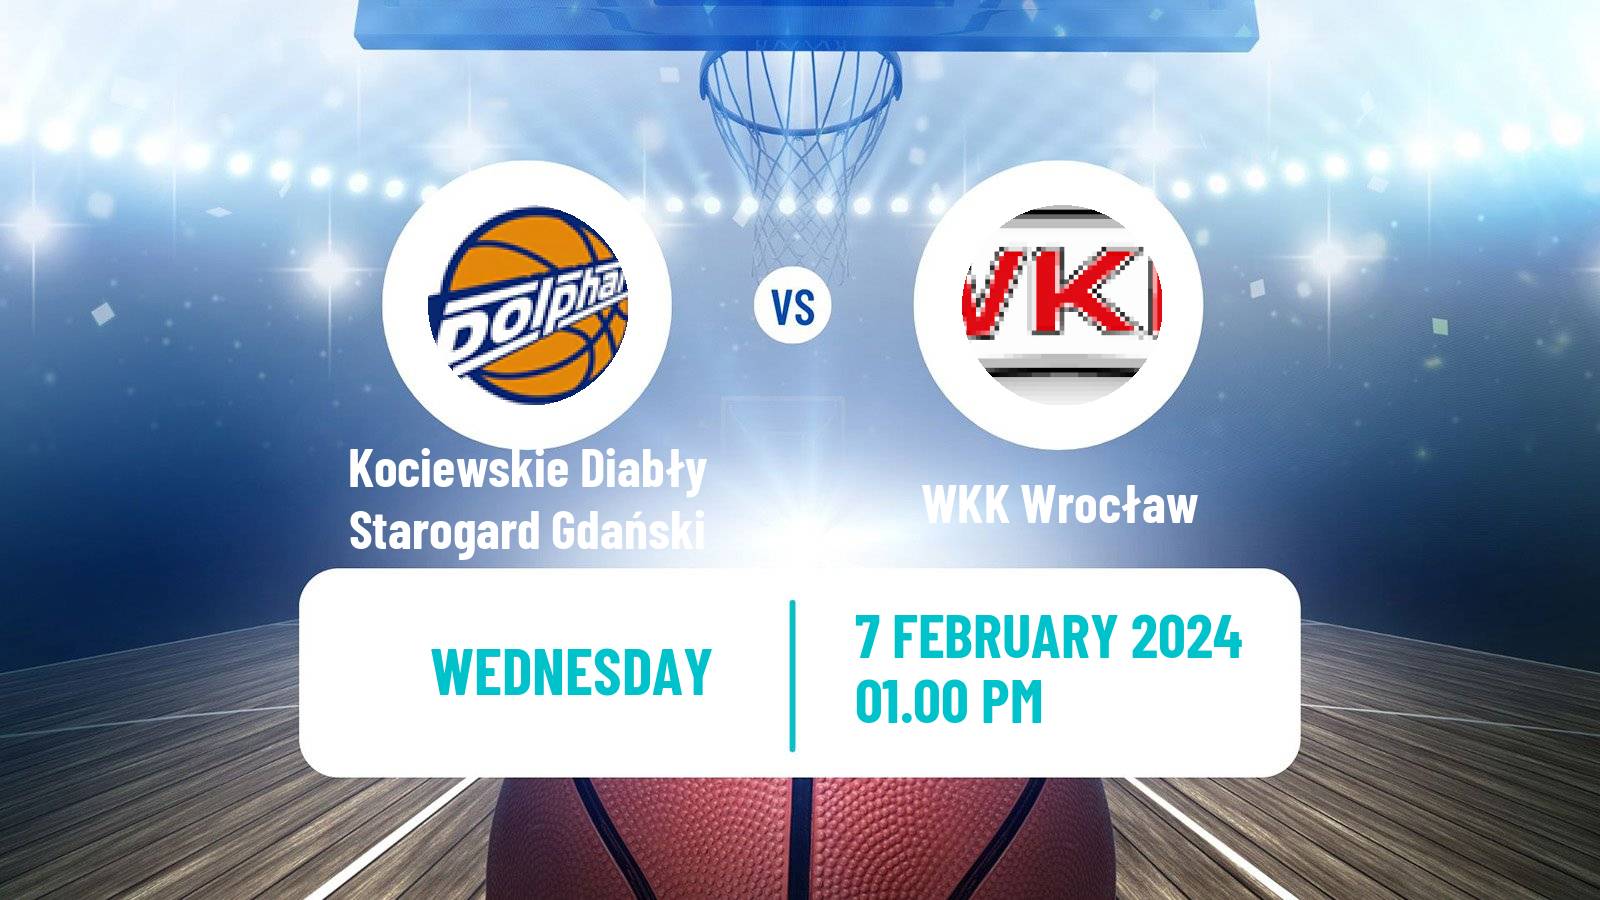 Basketball Polish 1 Liga Basketball Kociewskie Diabły Starogard Gdański - WKK Wrocław